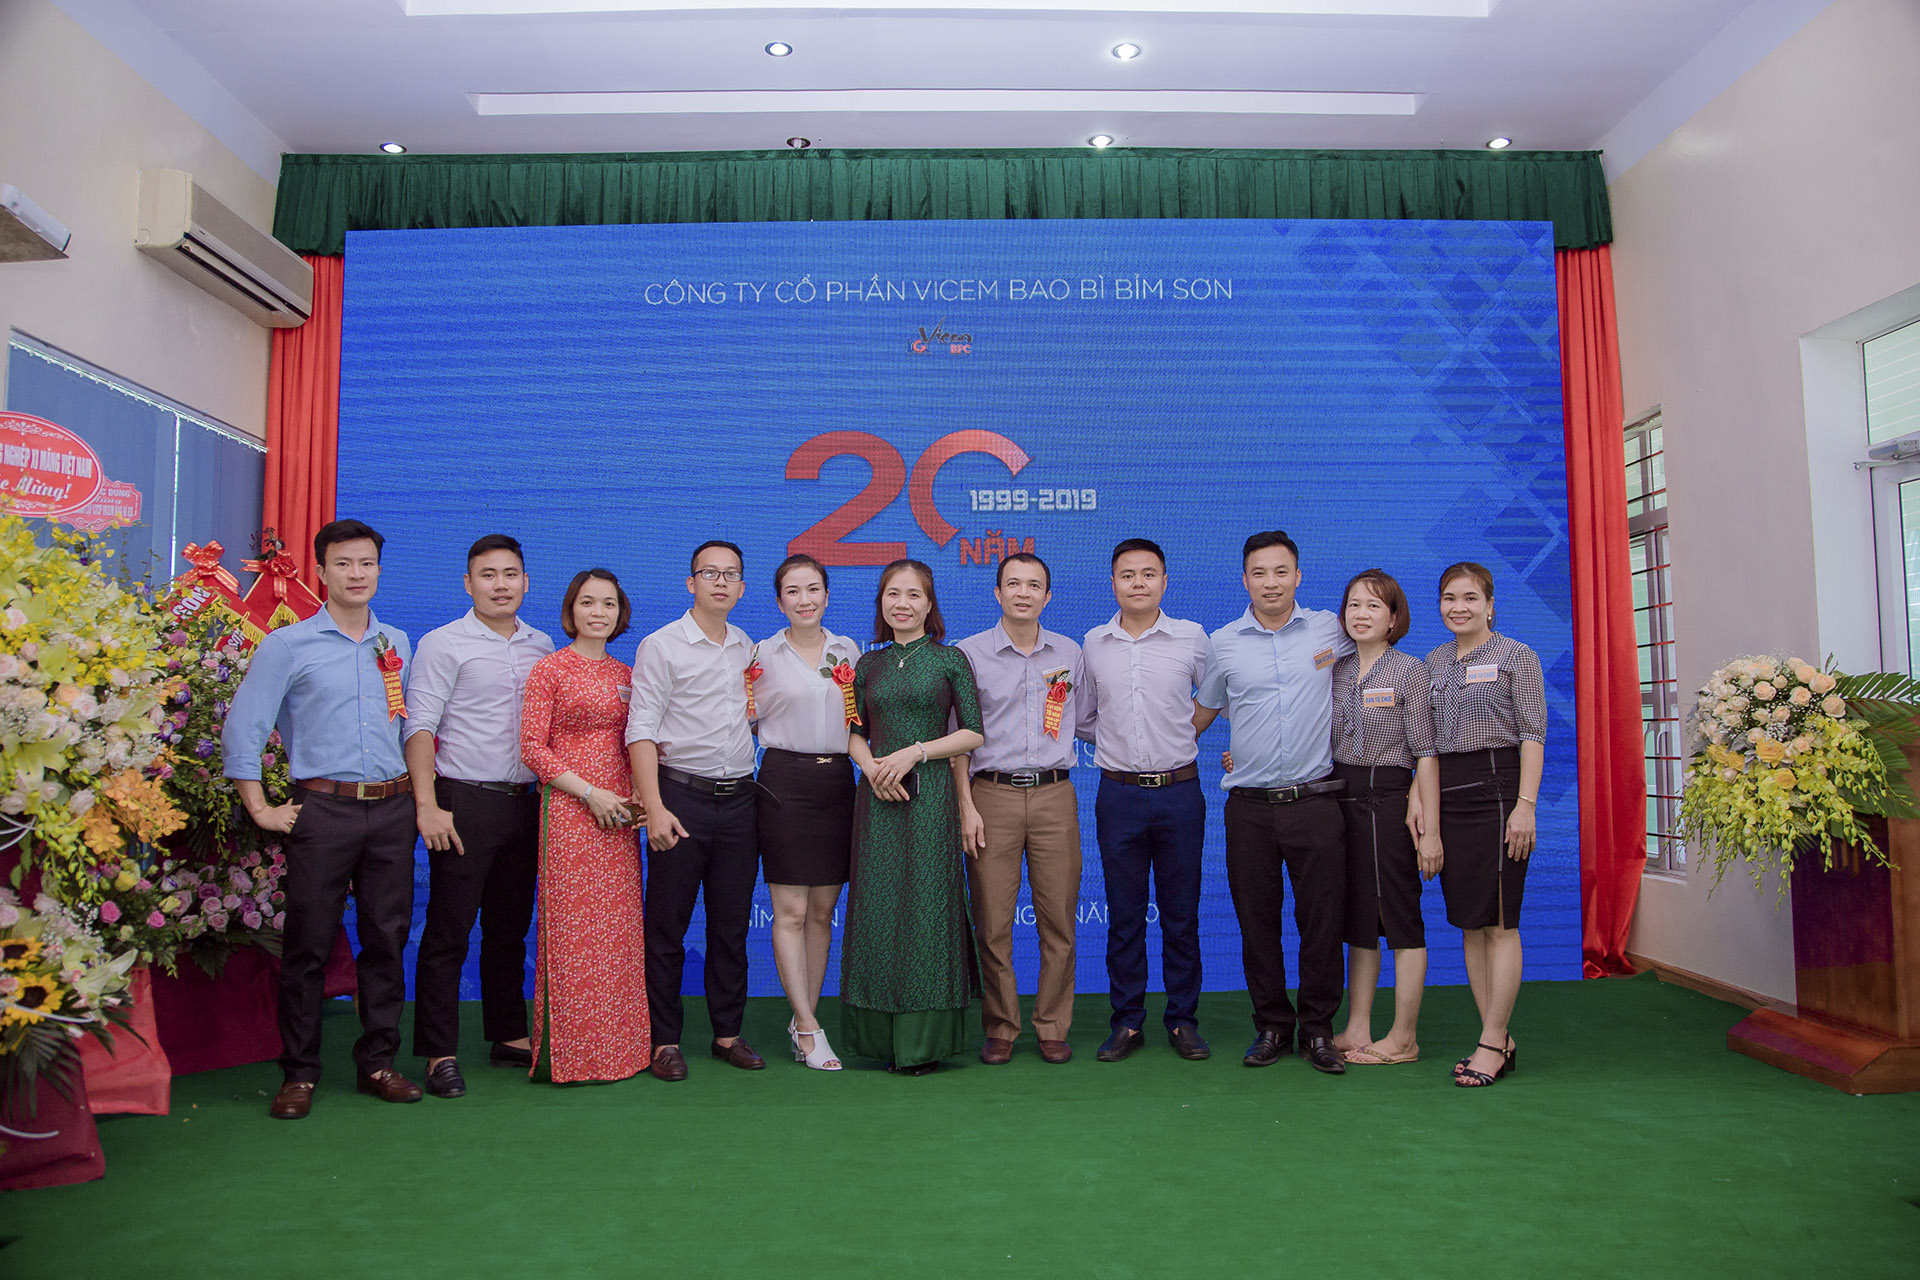 Công ty CP Vicem Bao bì Bỉm Sơn 20 năm xây dựng và trưởng thành (Anh Phương Media)